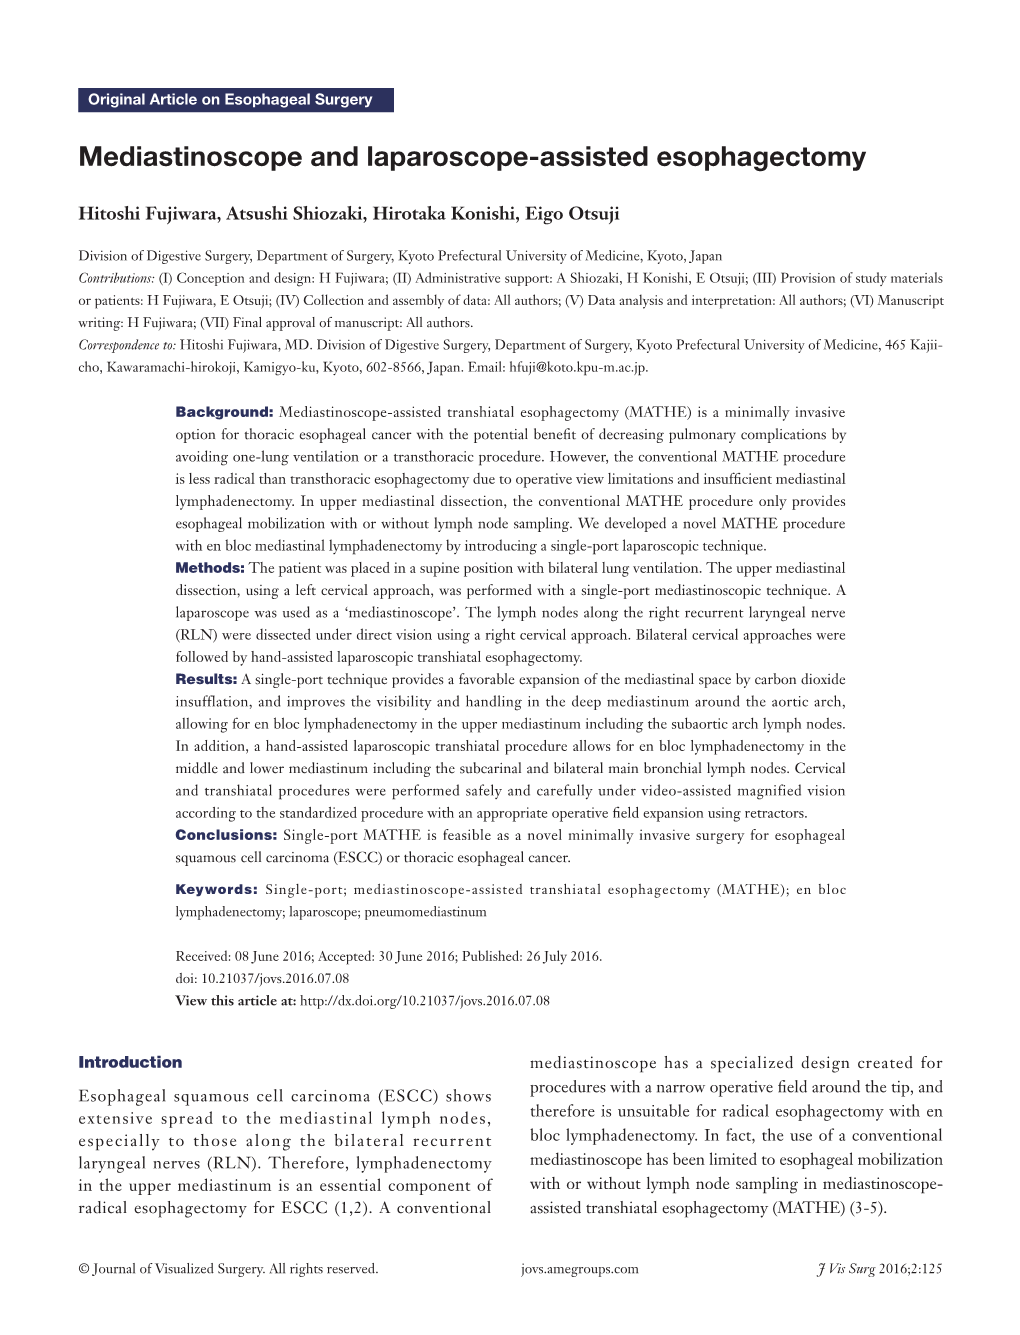 Mediastinoscope and Laparoscope-Assisted Esophagectomy